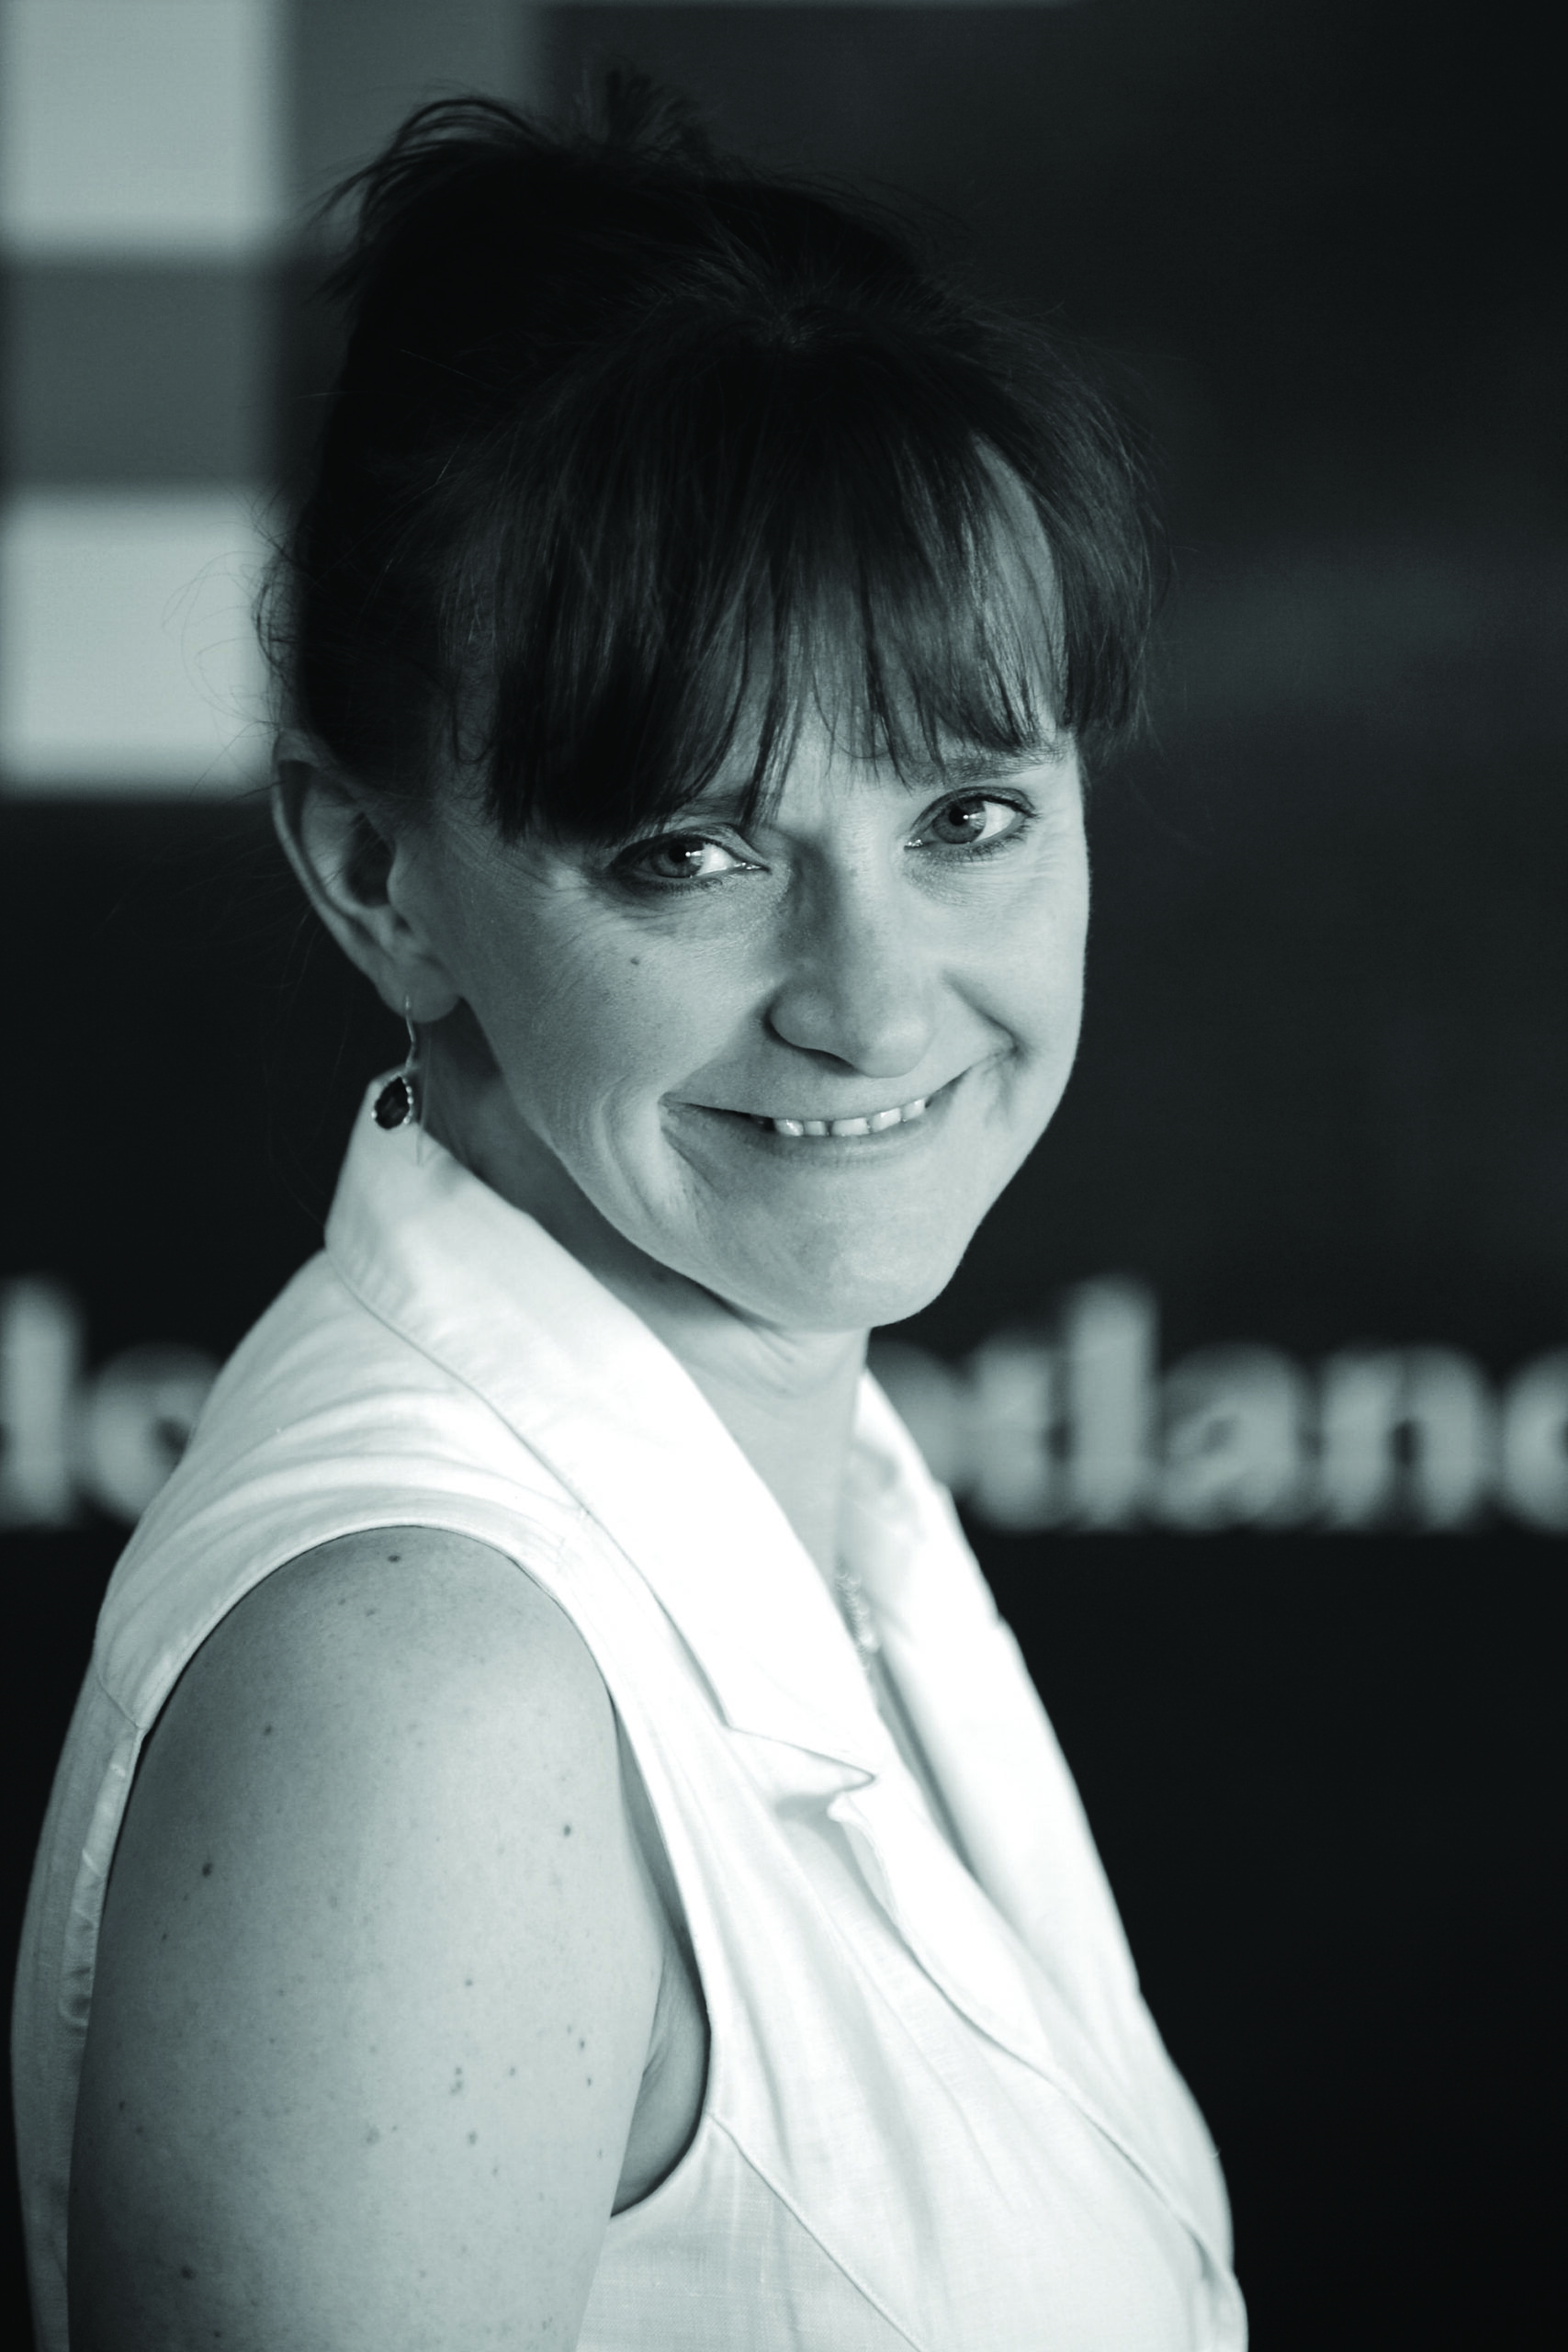 Sarah Macdonald – Site Manager